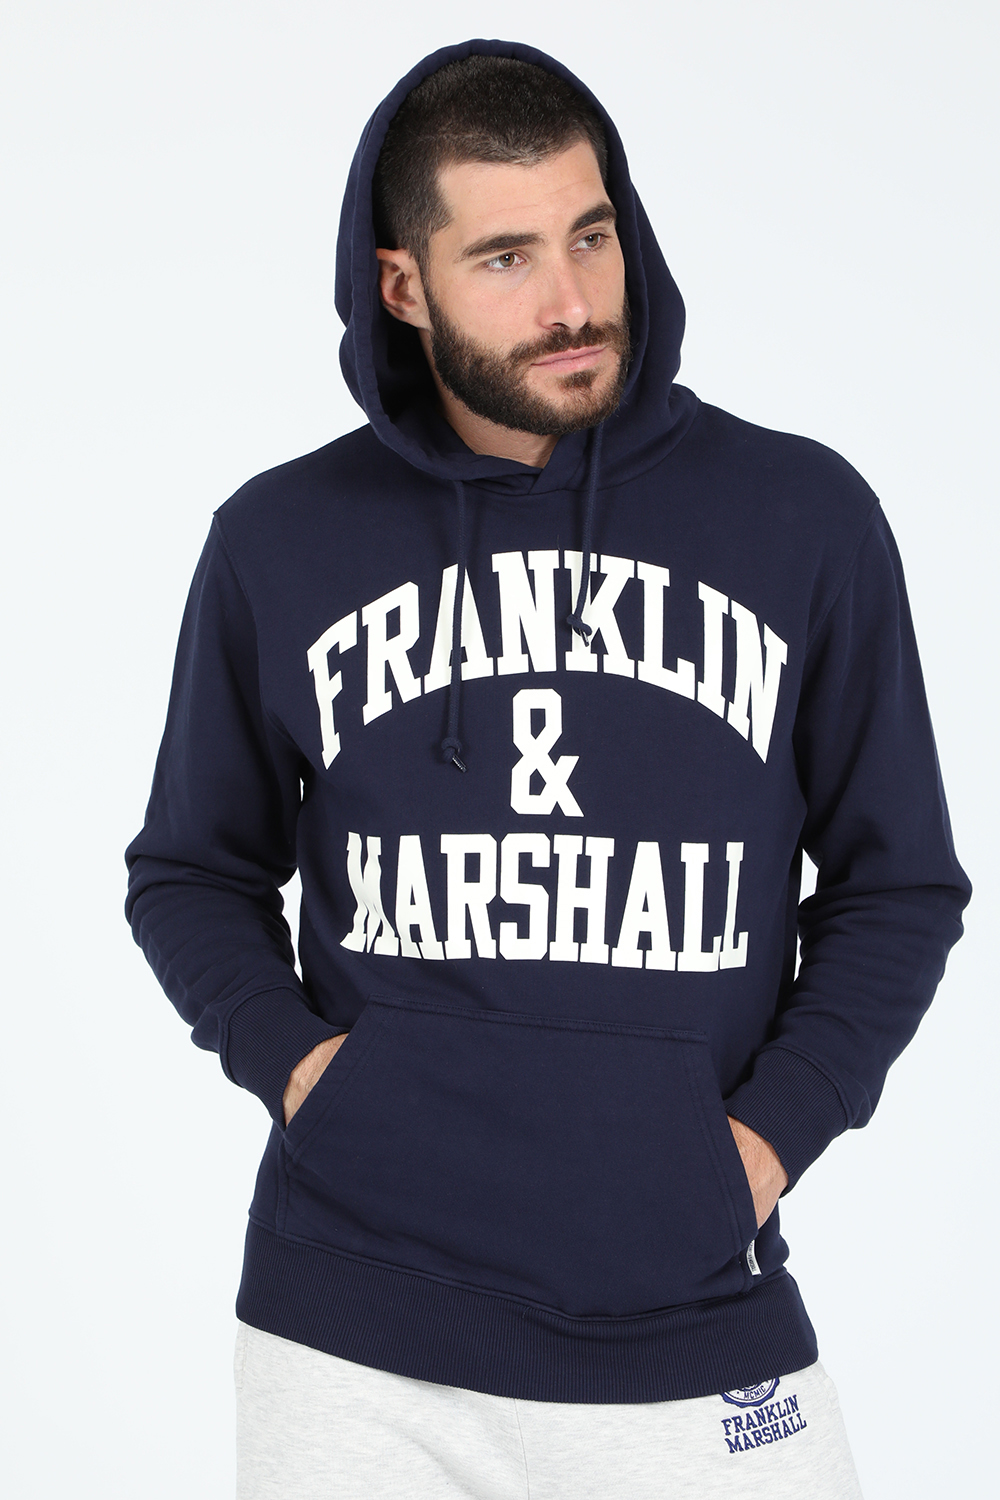 Ανδρικά/Ρούχα/Φούτερ/Μπλούζες FRANKLIN & MARSHALL - Ανδρική φούτερ μπλούζα FRANKLIN & MARSHALL μπλε